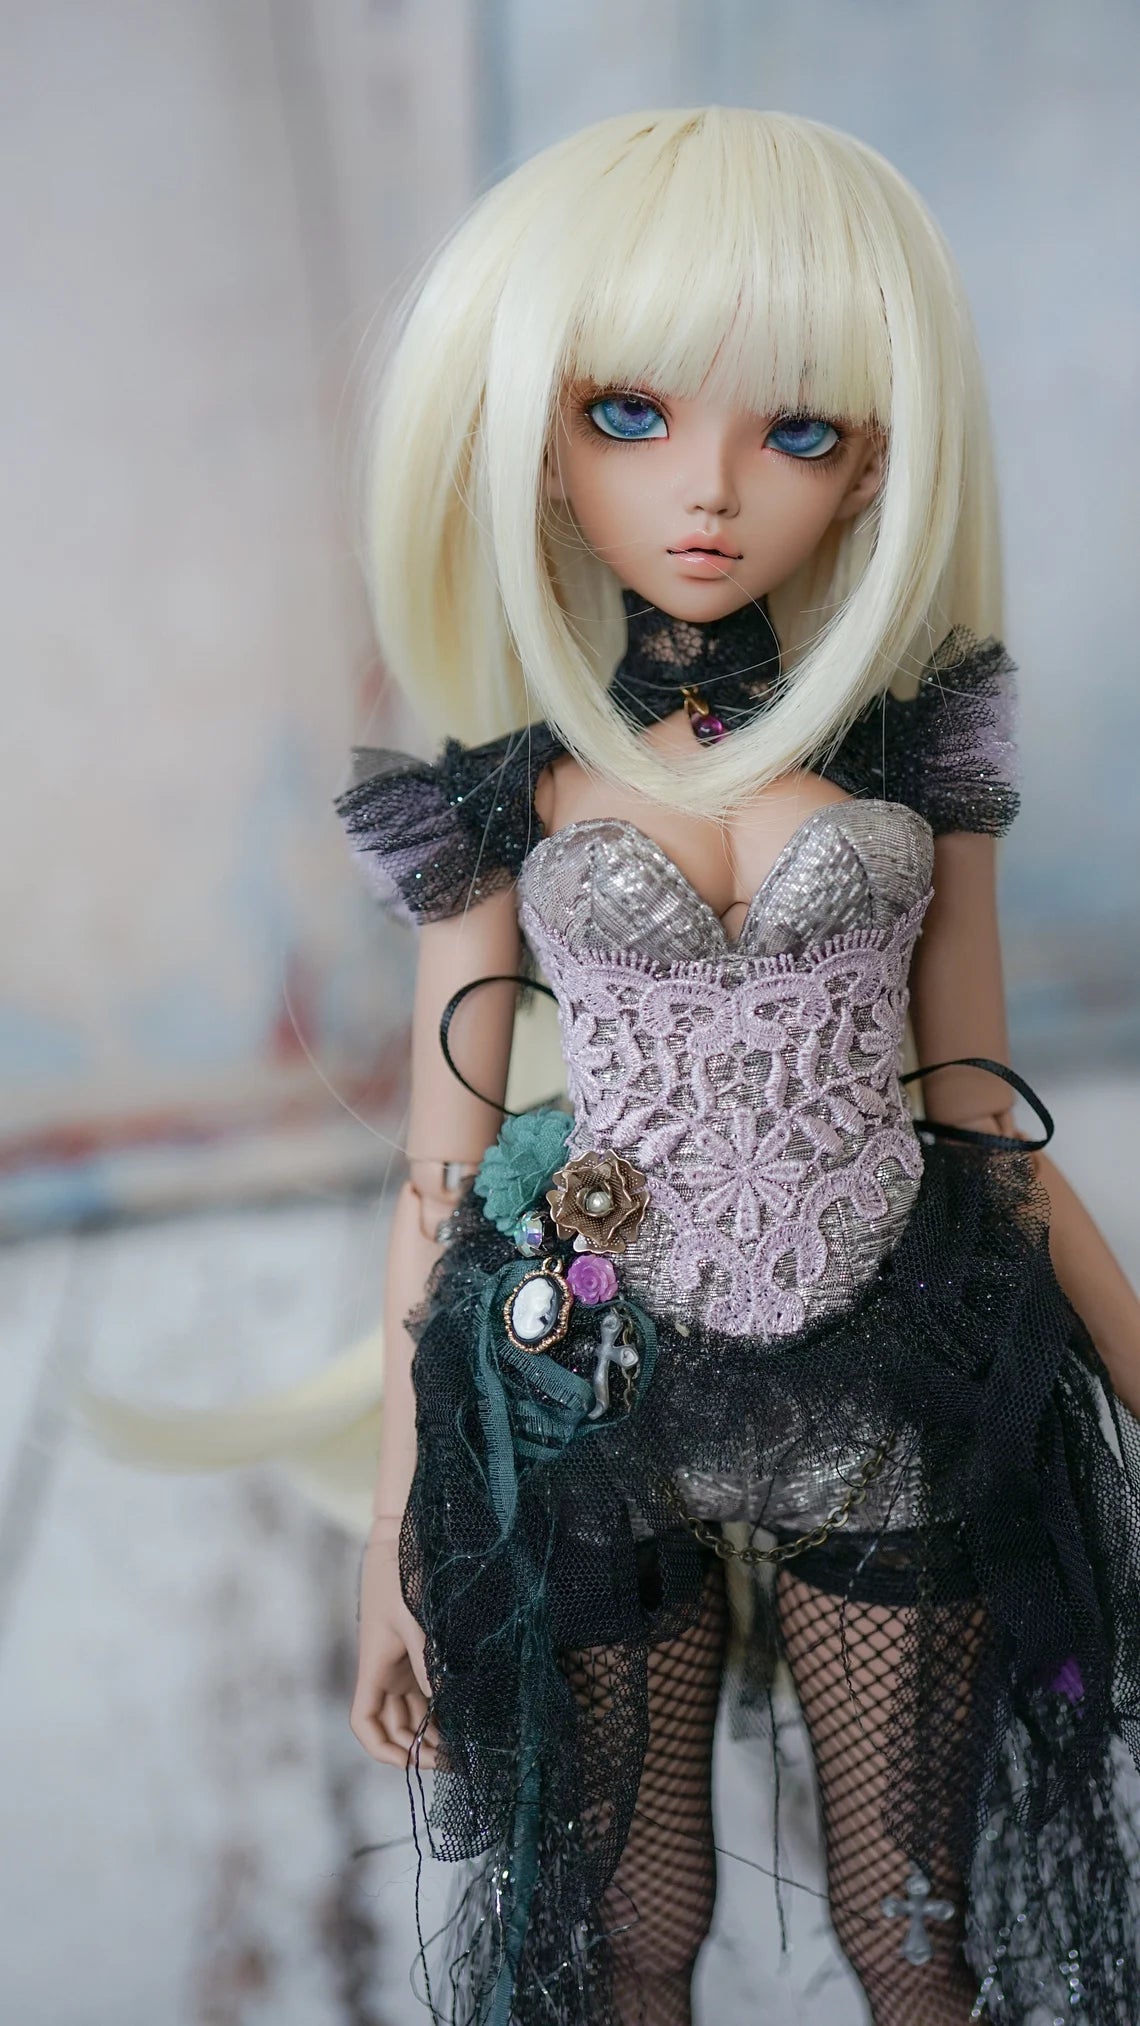 Custom doll Wig for Minifee 1/4 BJD Dolls- "TAN CAPS" 6-7" head size of Bjd, msd, Boneka ,Fairyland Minifee dolls Blonde bangs